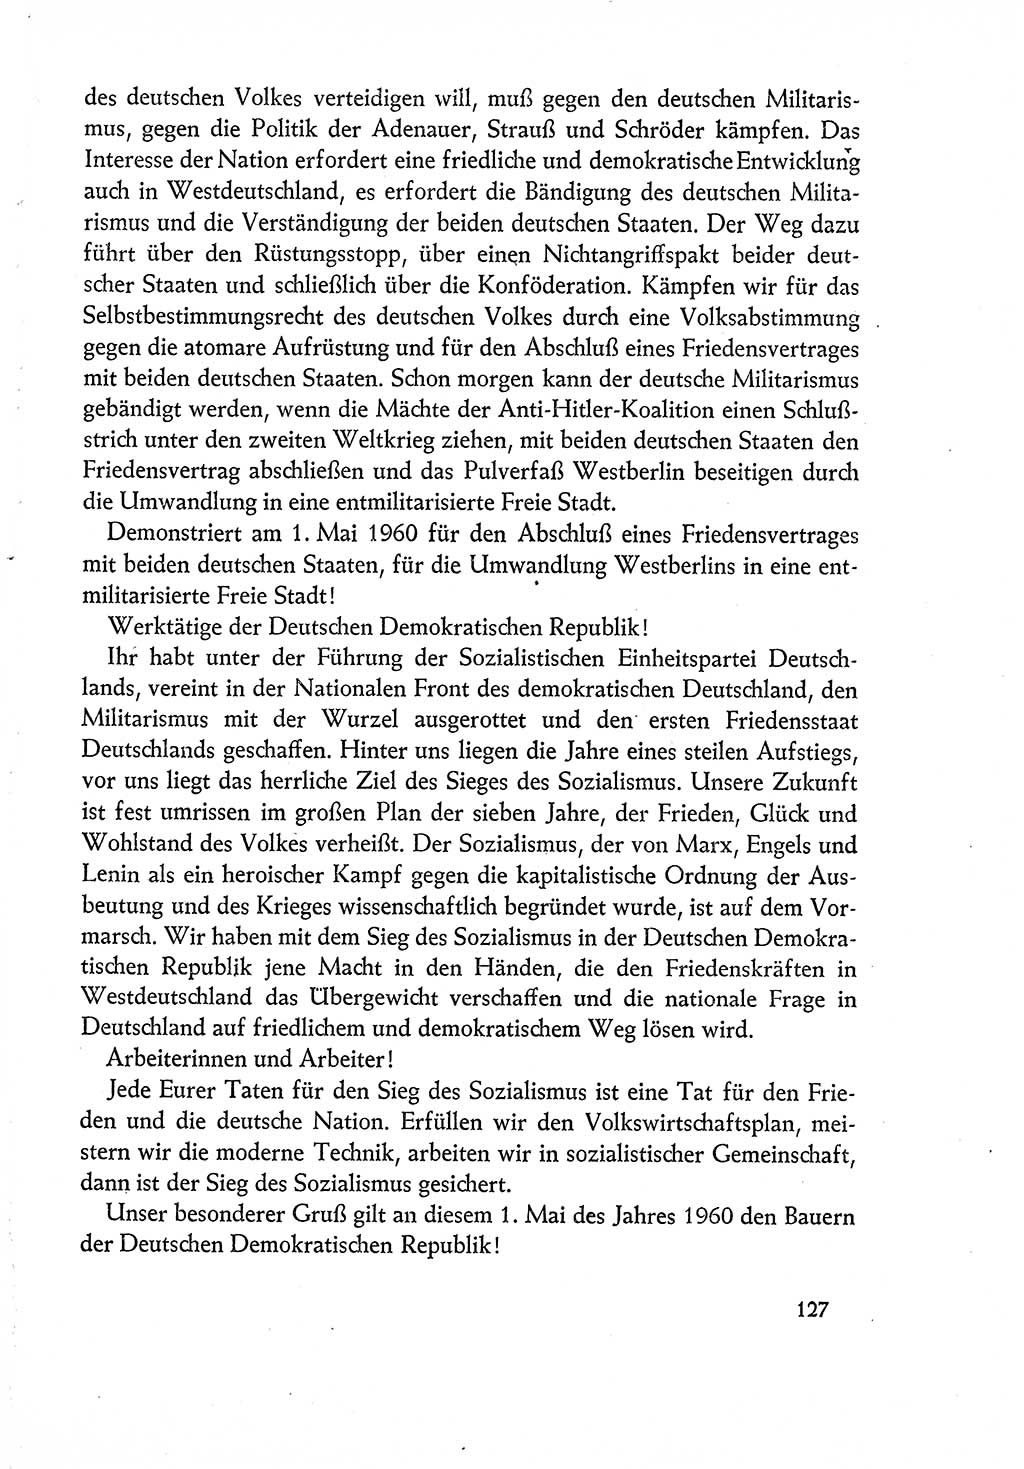 Dokumente der Sozialistischen Einheitspartei Deutschlands (SED) [Deutsche Demokratische Republik (DDR)] 1960-1961, Seite 127 (Dok. SED DDR 1960-1961, S. 127)